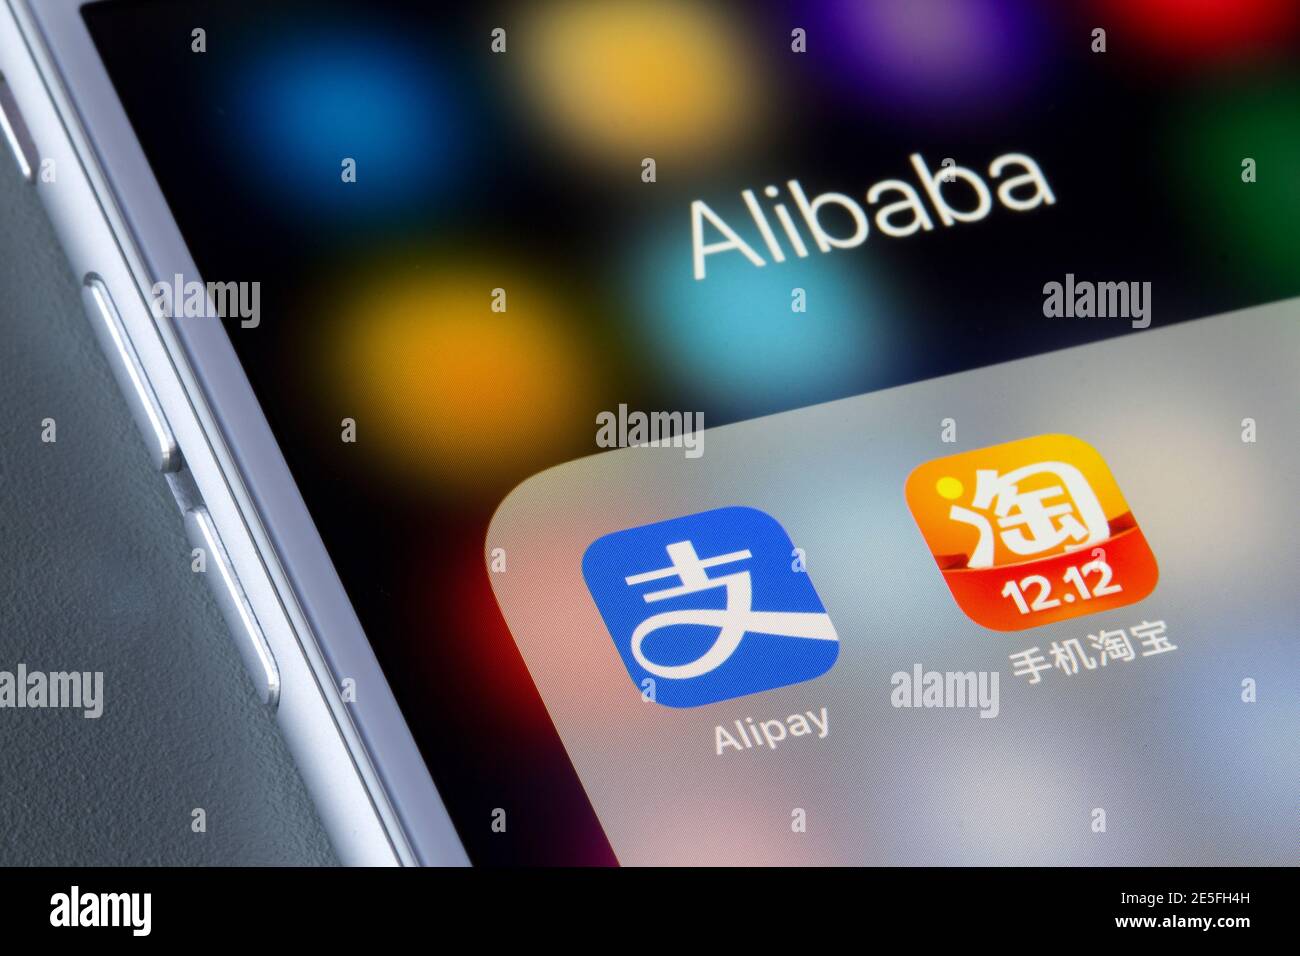 Les icônes d'Alibaba Group et de Taobao sont visibles sur un iPhone. Alipay est une plate-forme de paiement en ligne et mobile tierce tandis que Taobao est une e-comm Banque D'Images